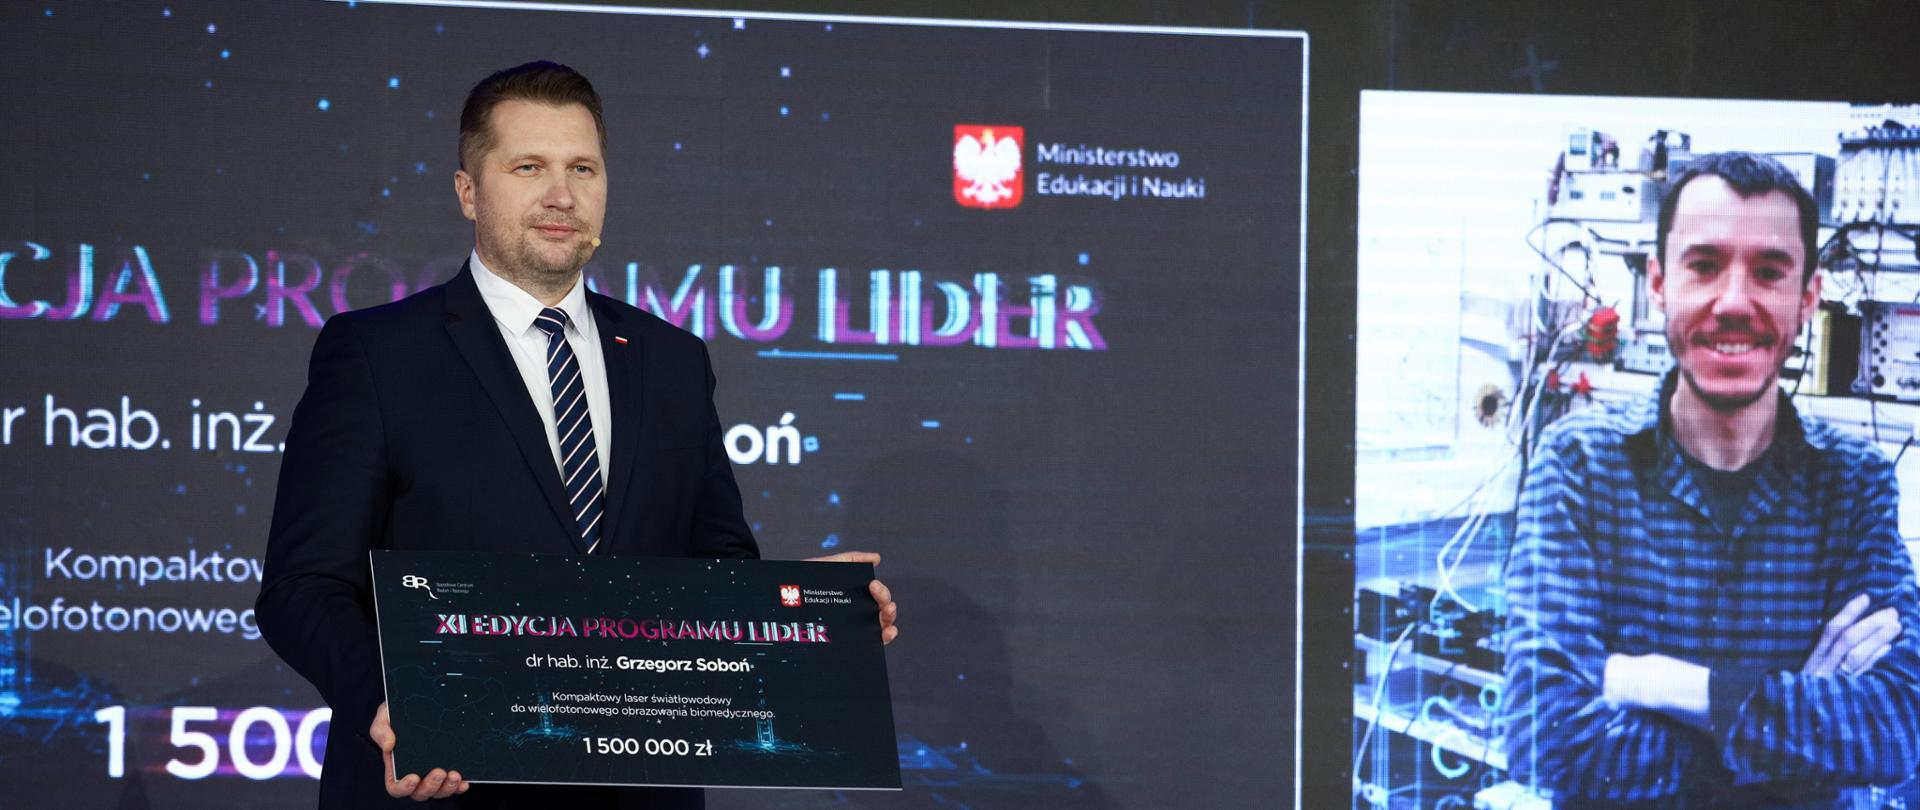 Minister Edukacji i Nauki Przemysław Czarnek podczas gali wręczenia nagród XI edycji programu LIDER 